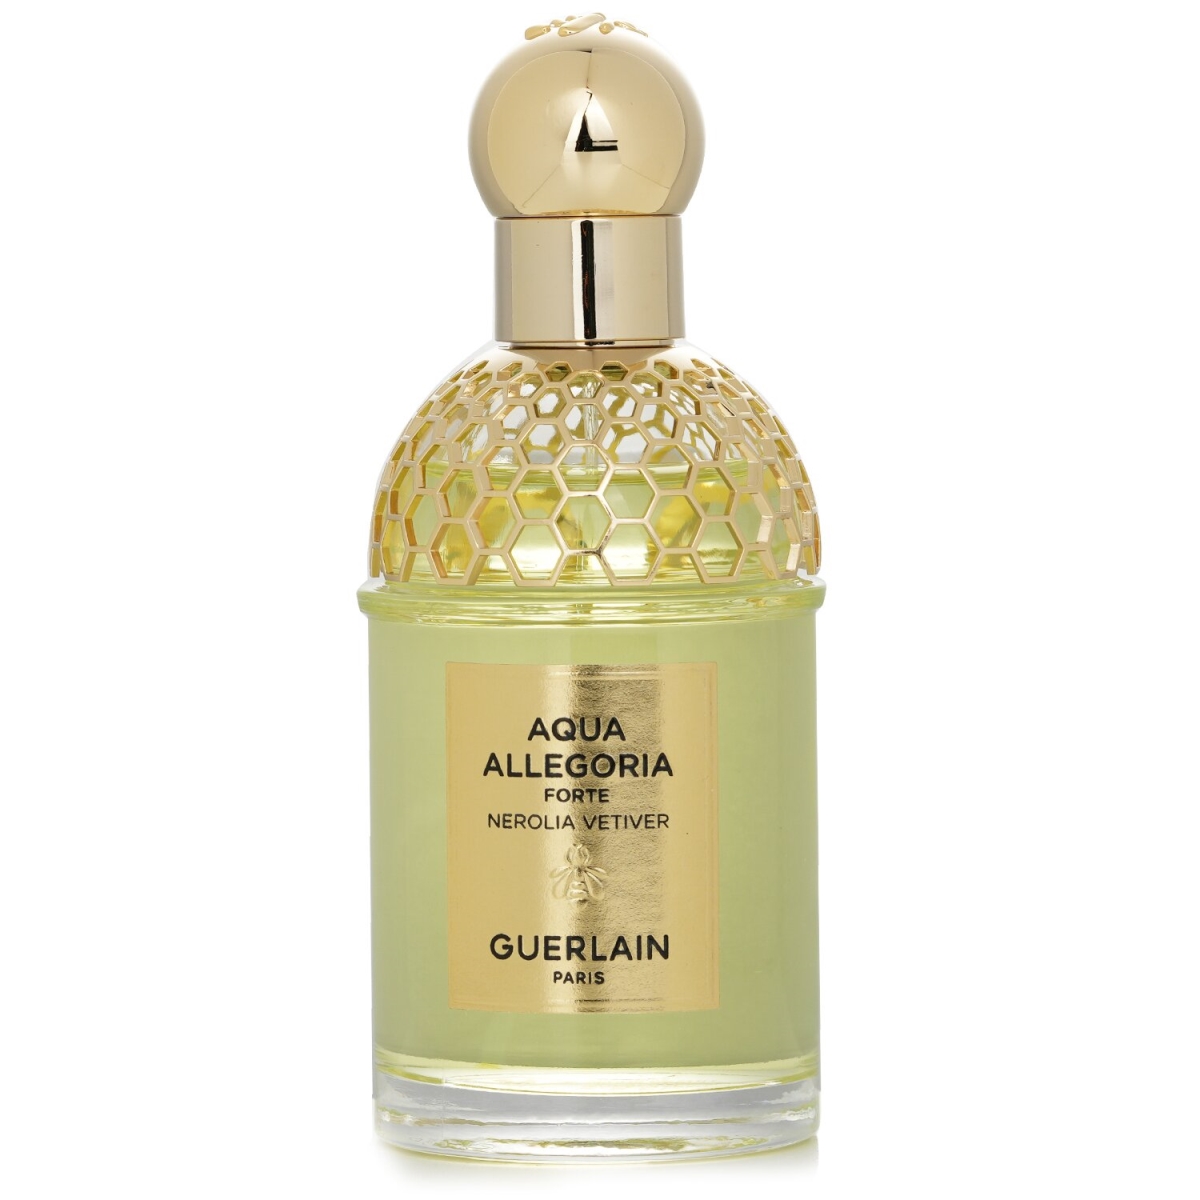 307080 75 ml Aqua Allegoria Forte Nerolia Vetiver Eau De Parfum Spray for Womens -  Guerlain